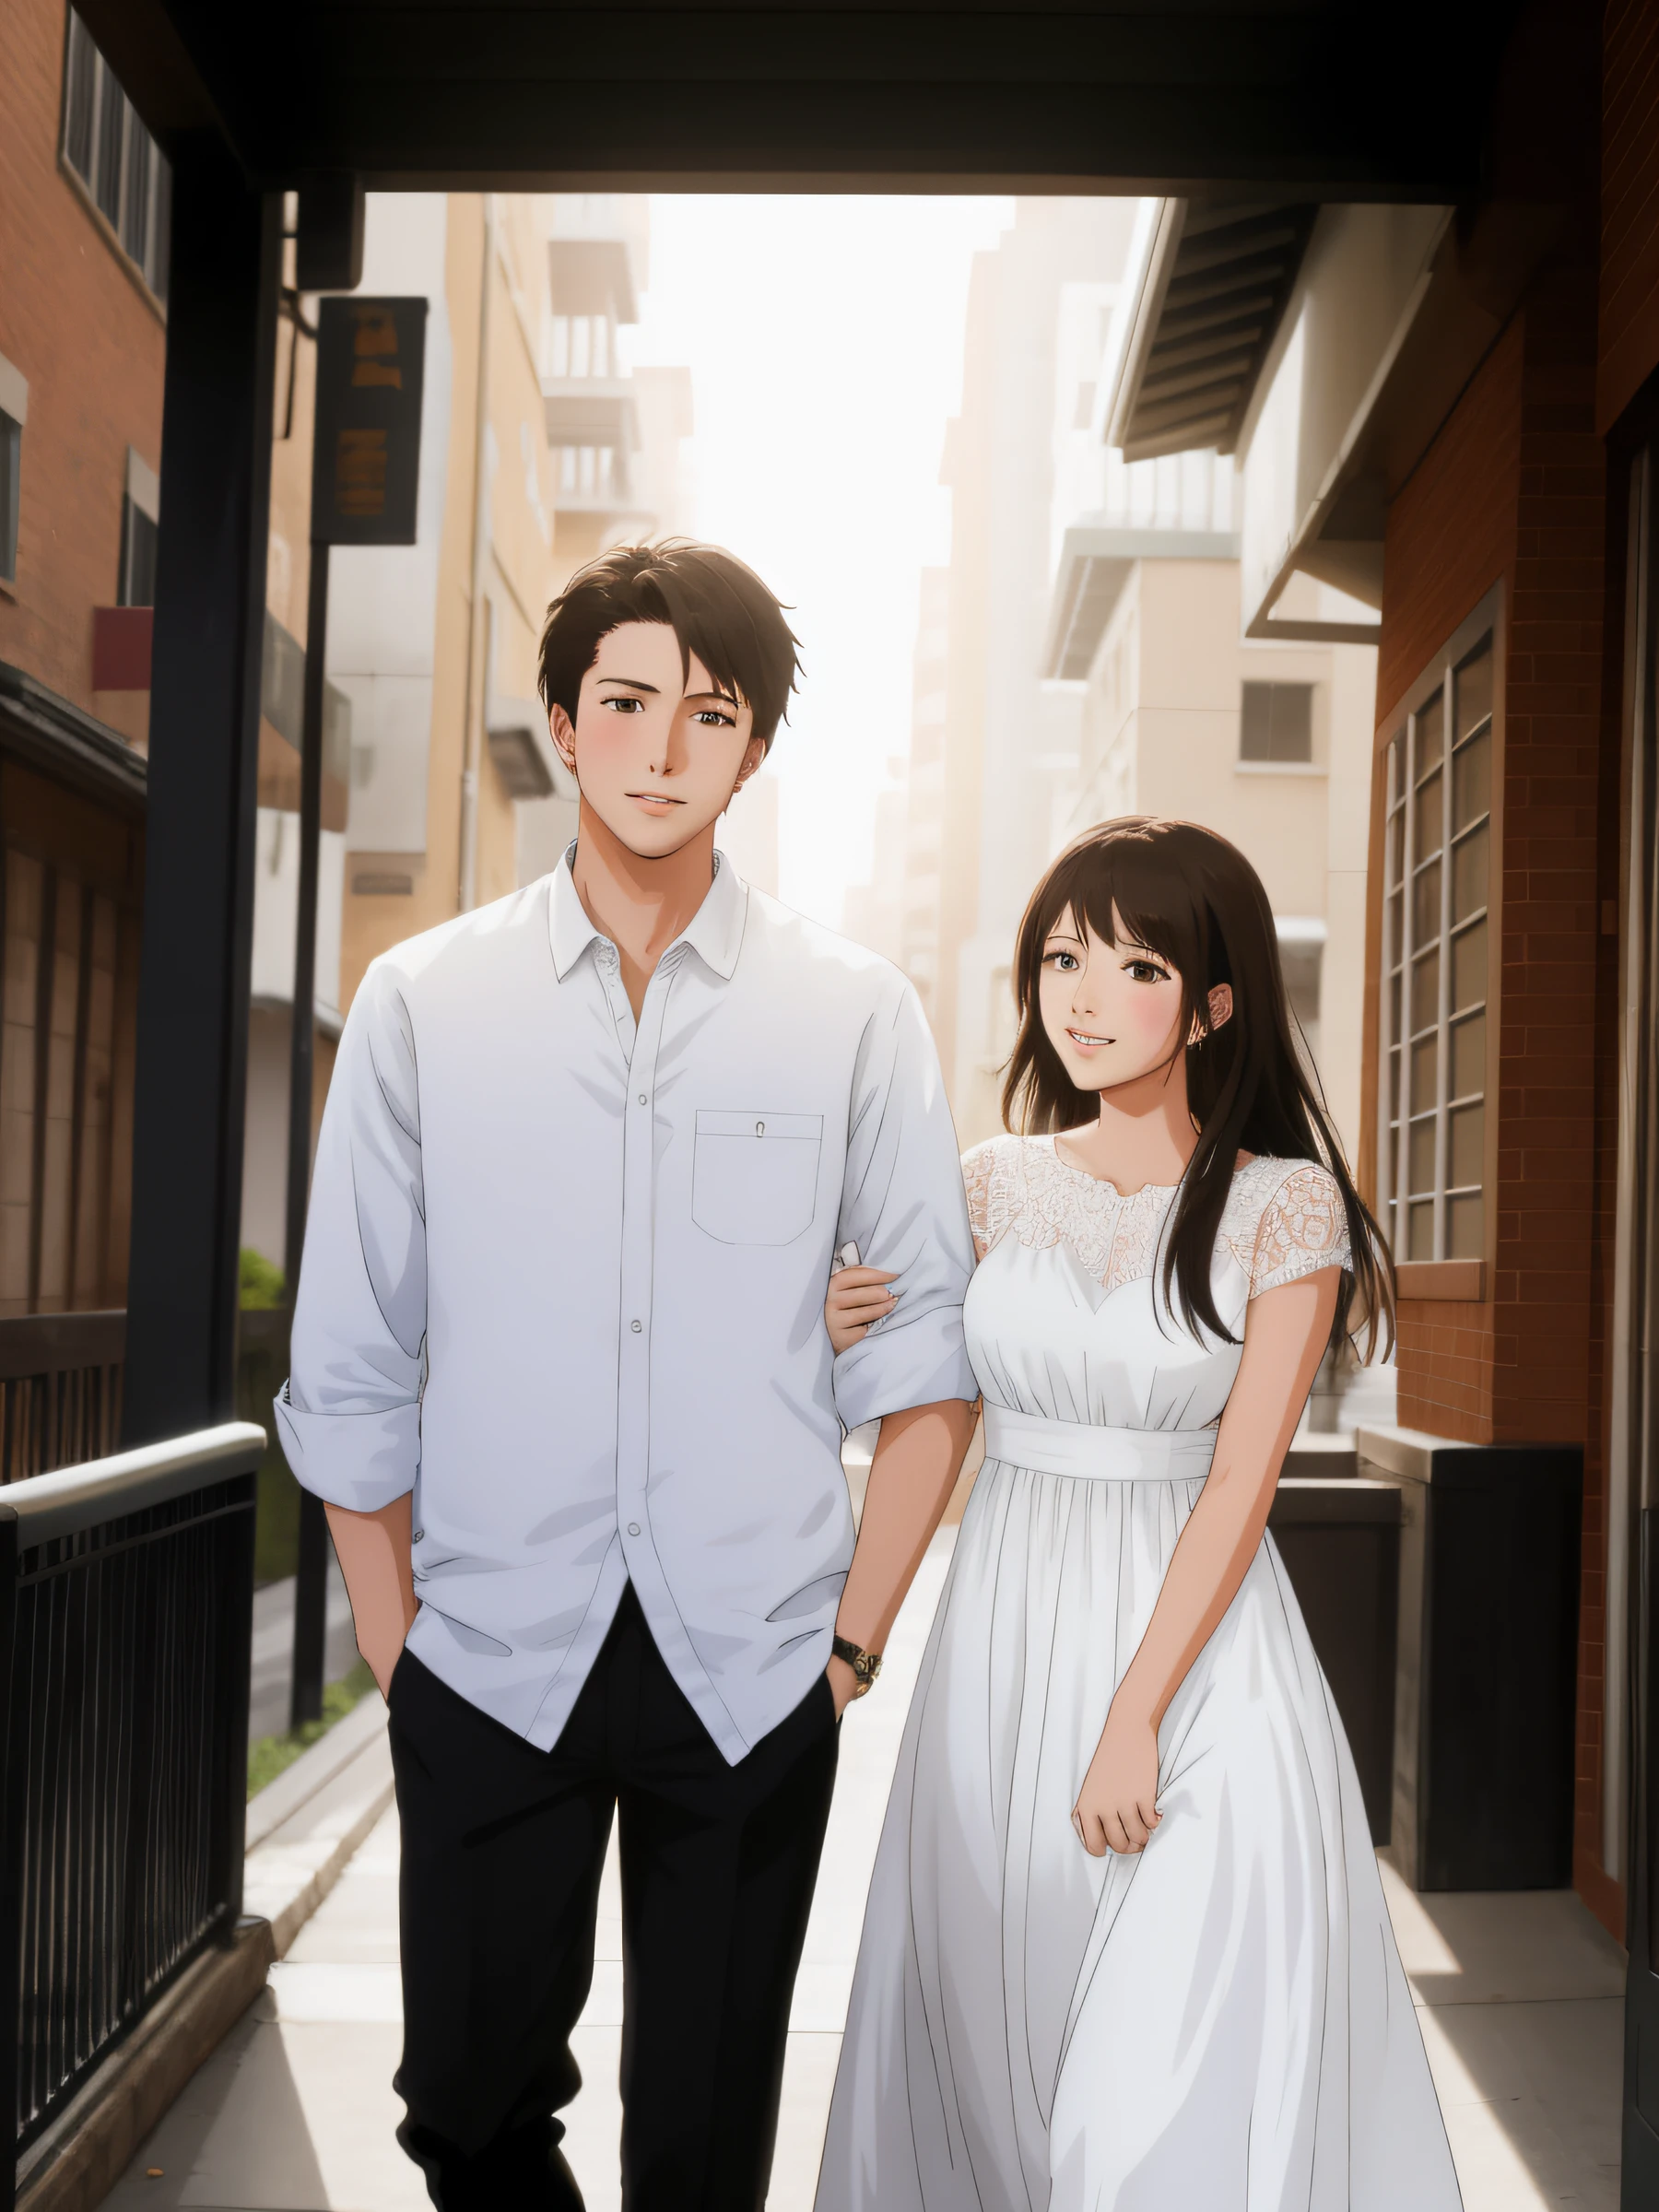 Anime-Serie, junges Paar, gute Qualität, Hand in der Tasche, weißes Kleid, Frau steht Männern gegenüber, im Raum,